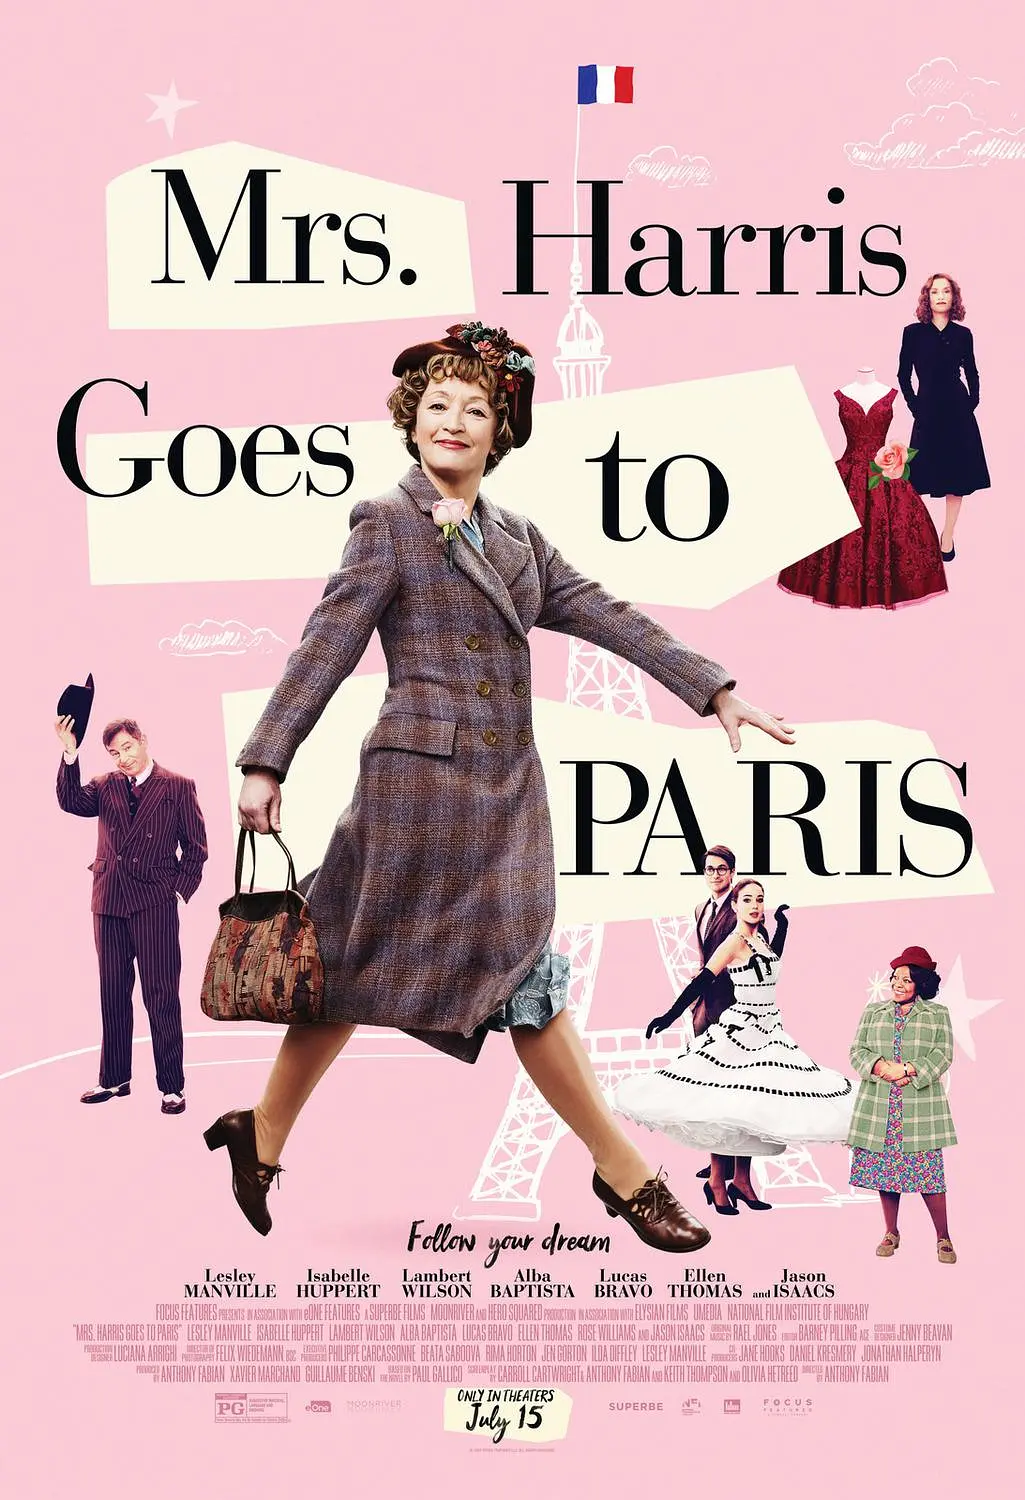 哈里斯夫人去巴黎